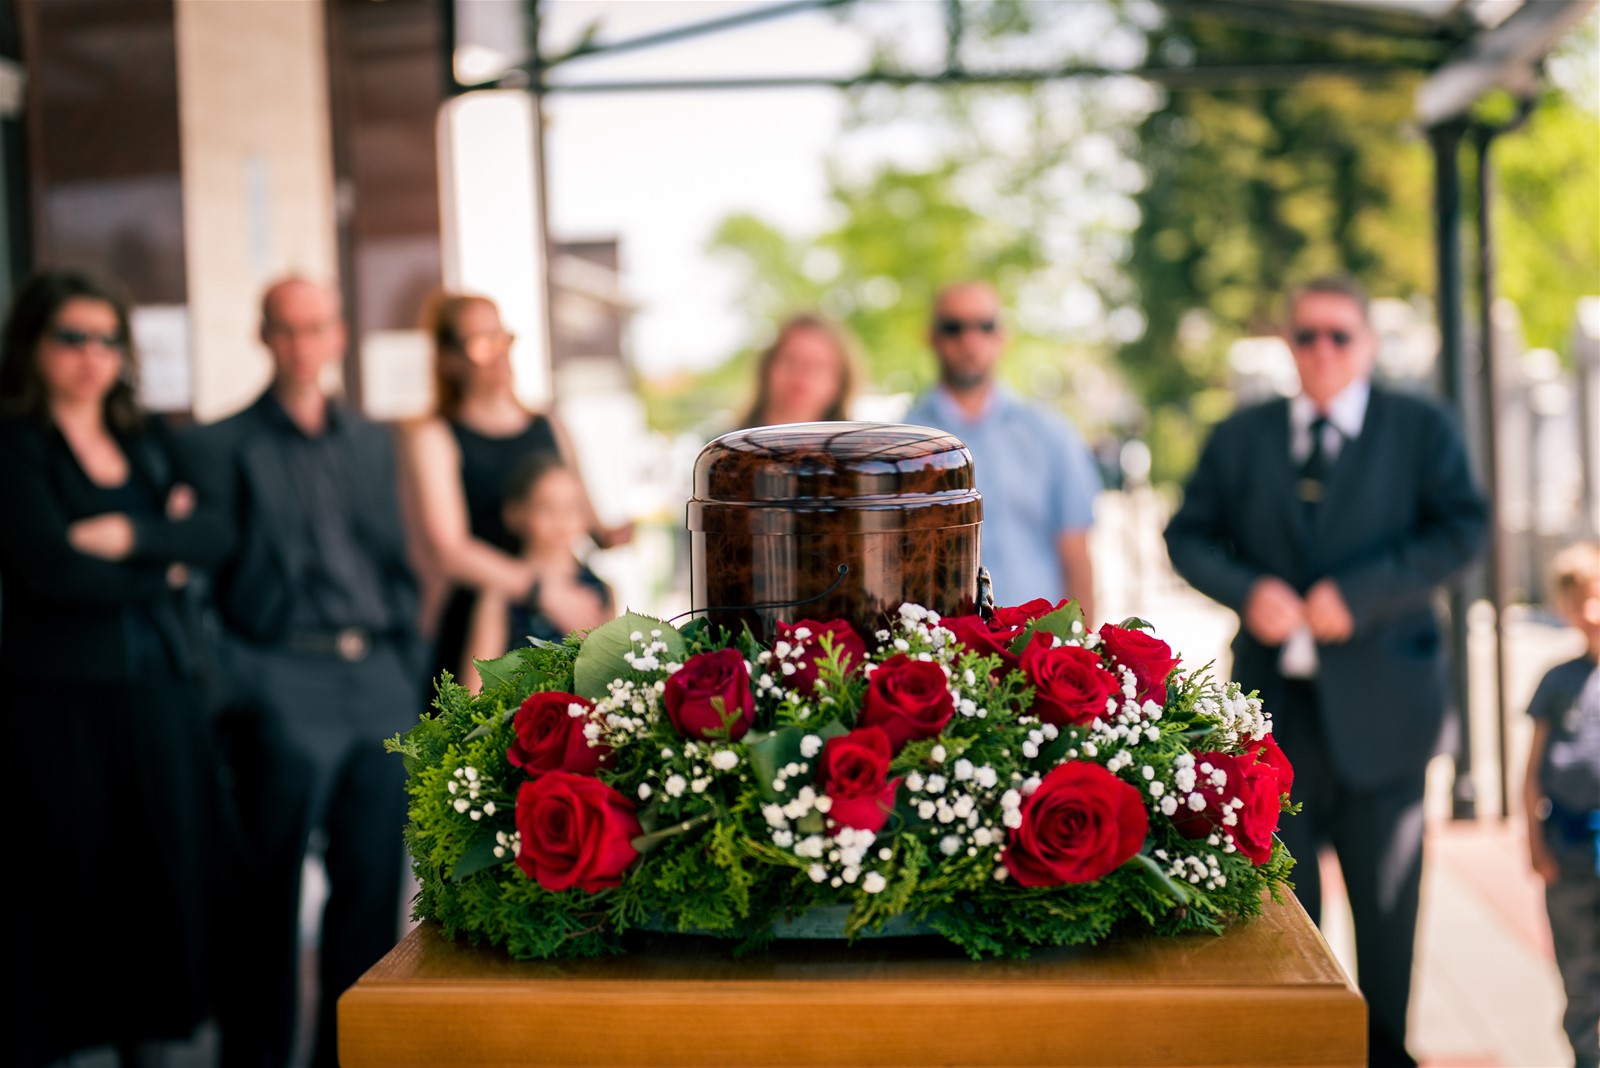 Verhalten auf der Beerdigung: Wie zeige ich Respekt und Anteilnahme?